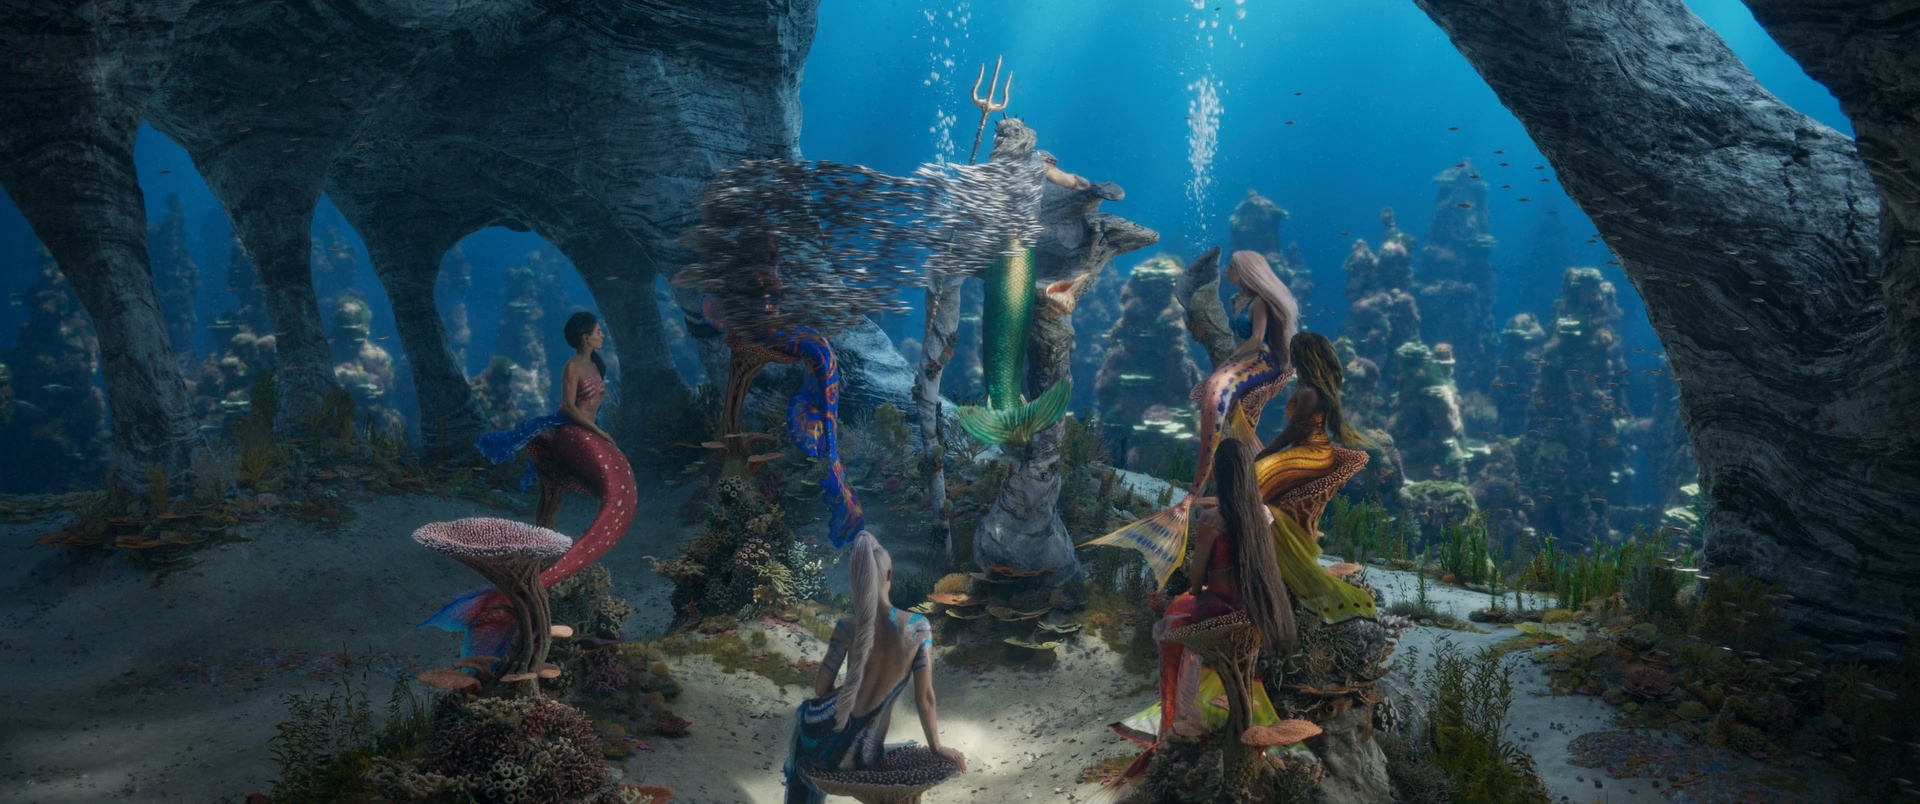 Изображение для Русалочка / The Little Mermaid (2023) WEB-DL 1080p (кликните для просмотра полного изображения)